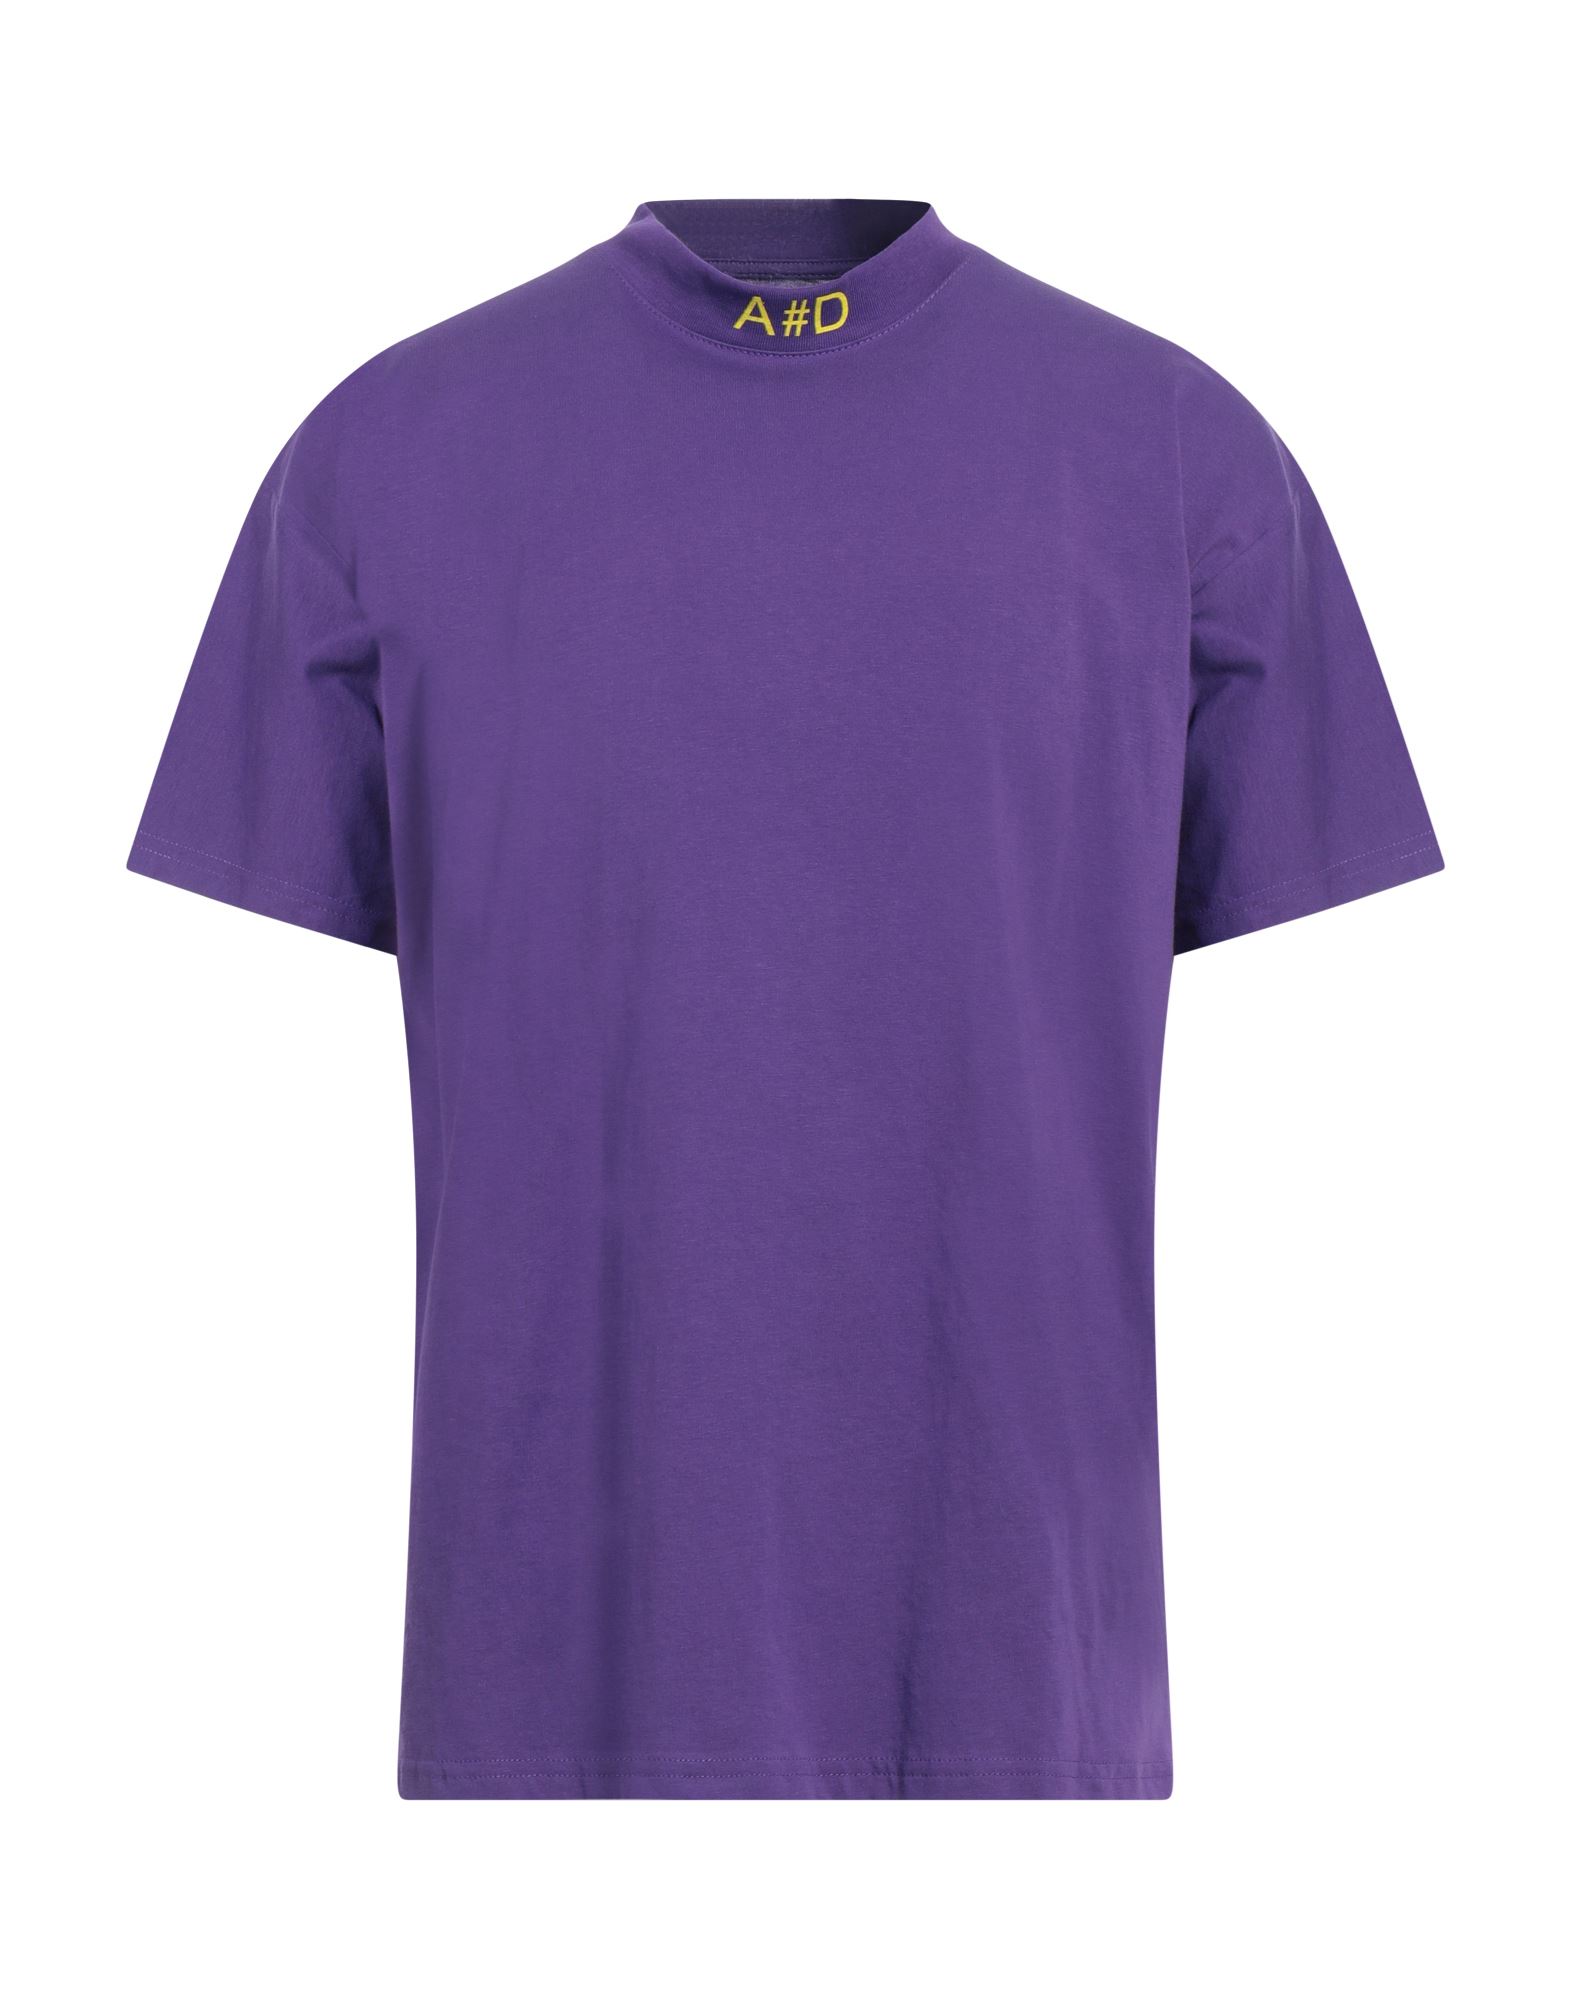 Alessandro Dell'acqua Man T-shirt Purple Size 3xl Cotton